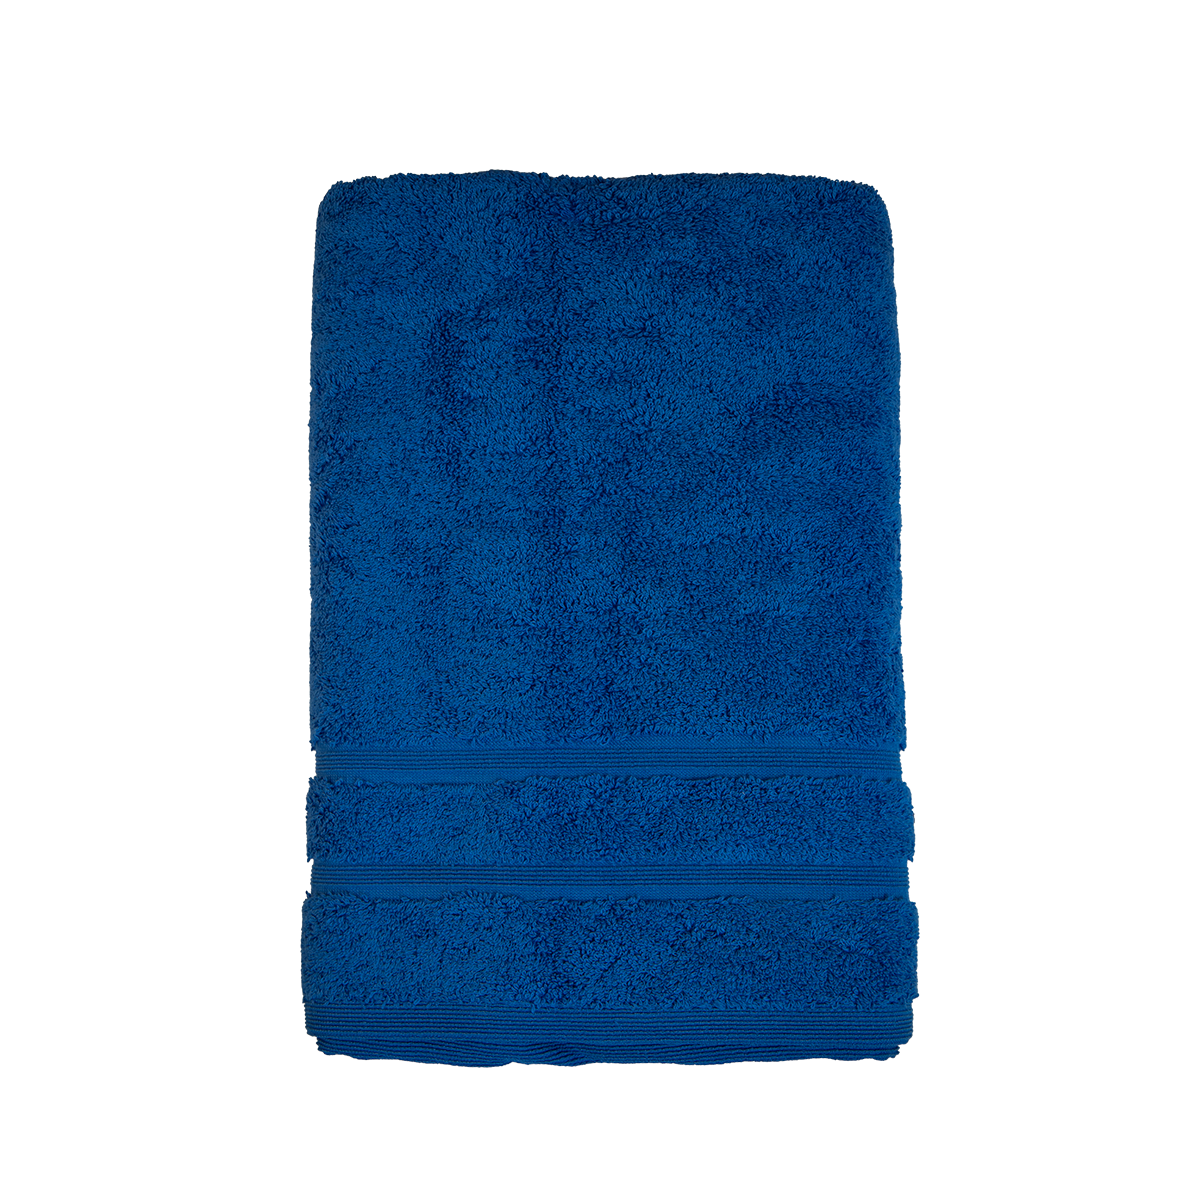 Bio Baumwoll Dusch- und Badetuch, in den Größen 70 mal 140 cm und 100 mal 140 cm in der Farbe Royal (kräftiges dunkles Blau)